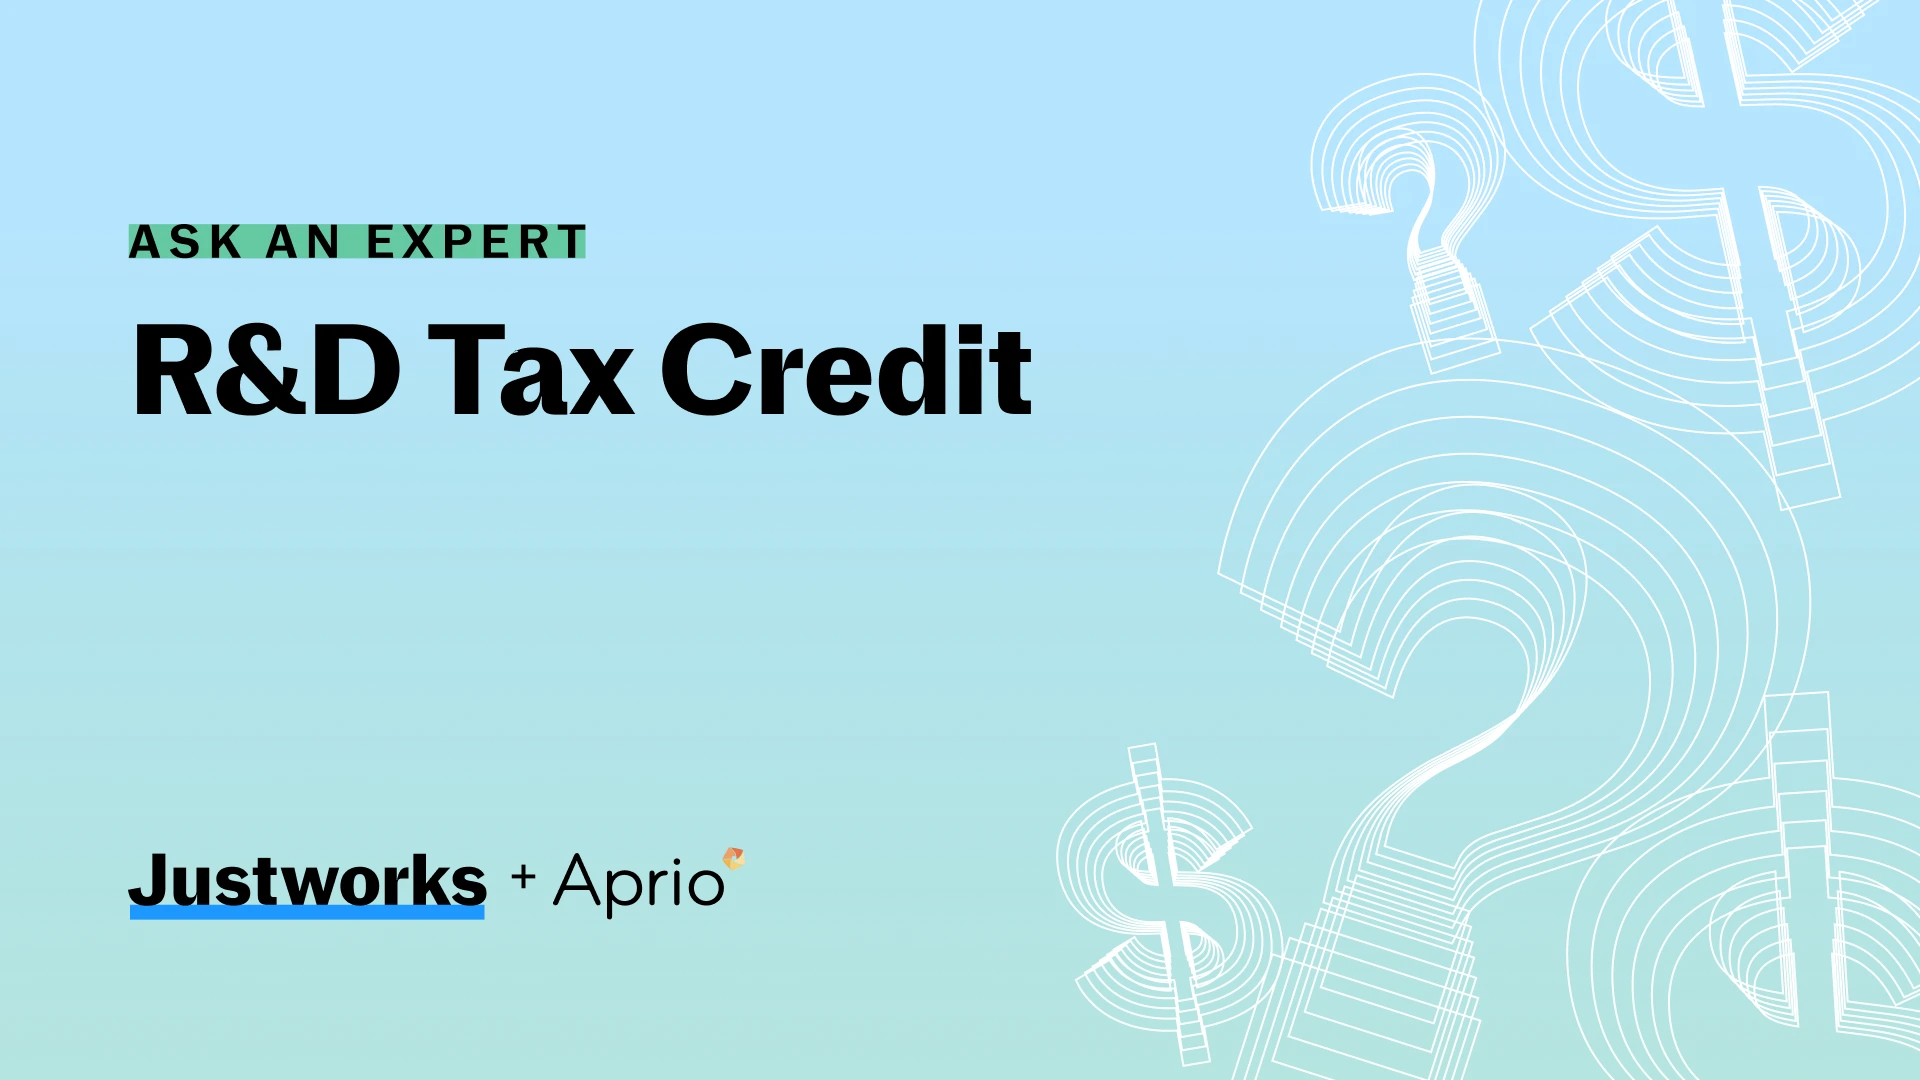 Aprio + Justworks R&D Tax Credit